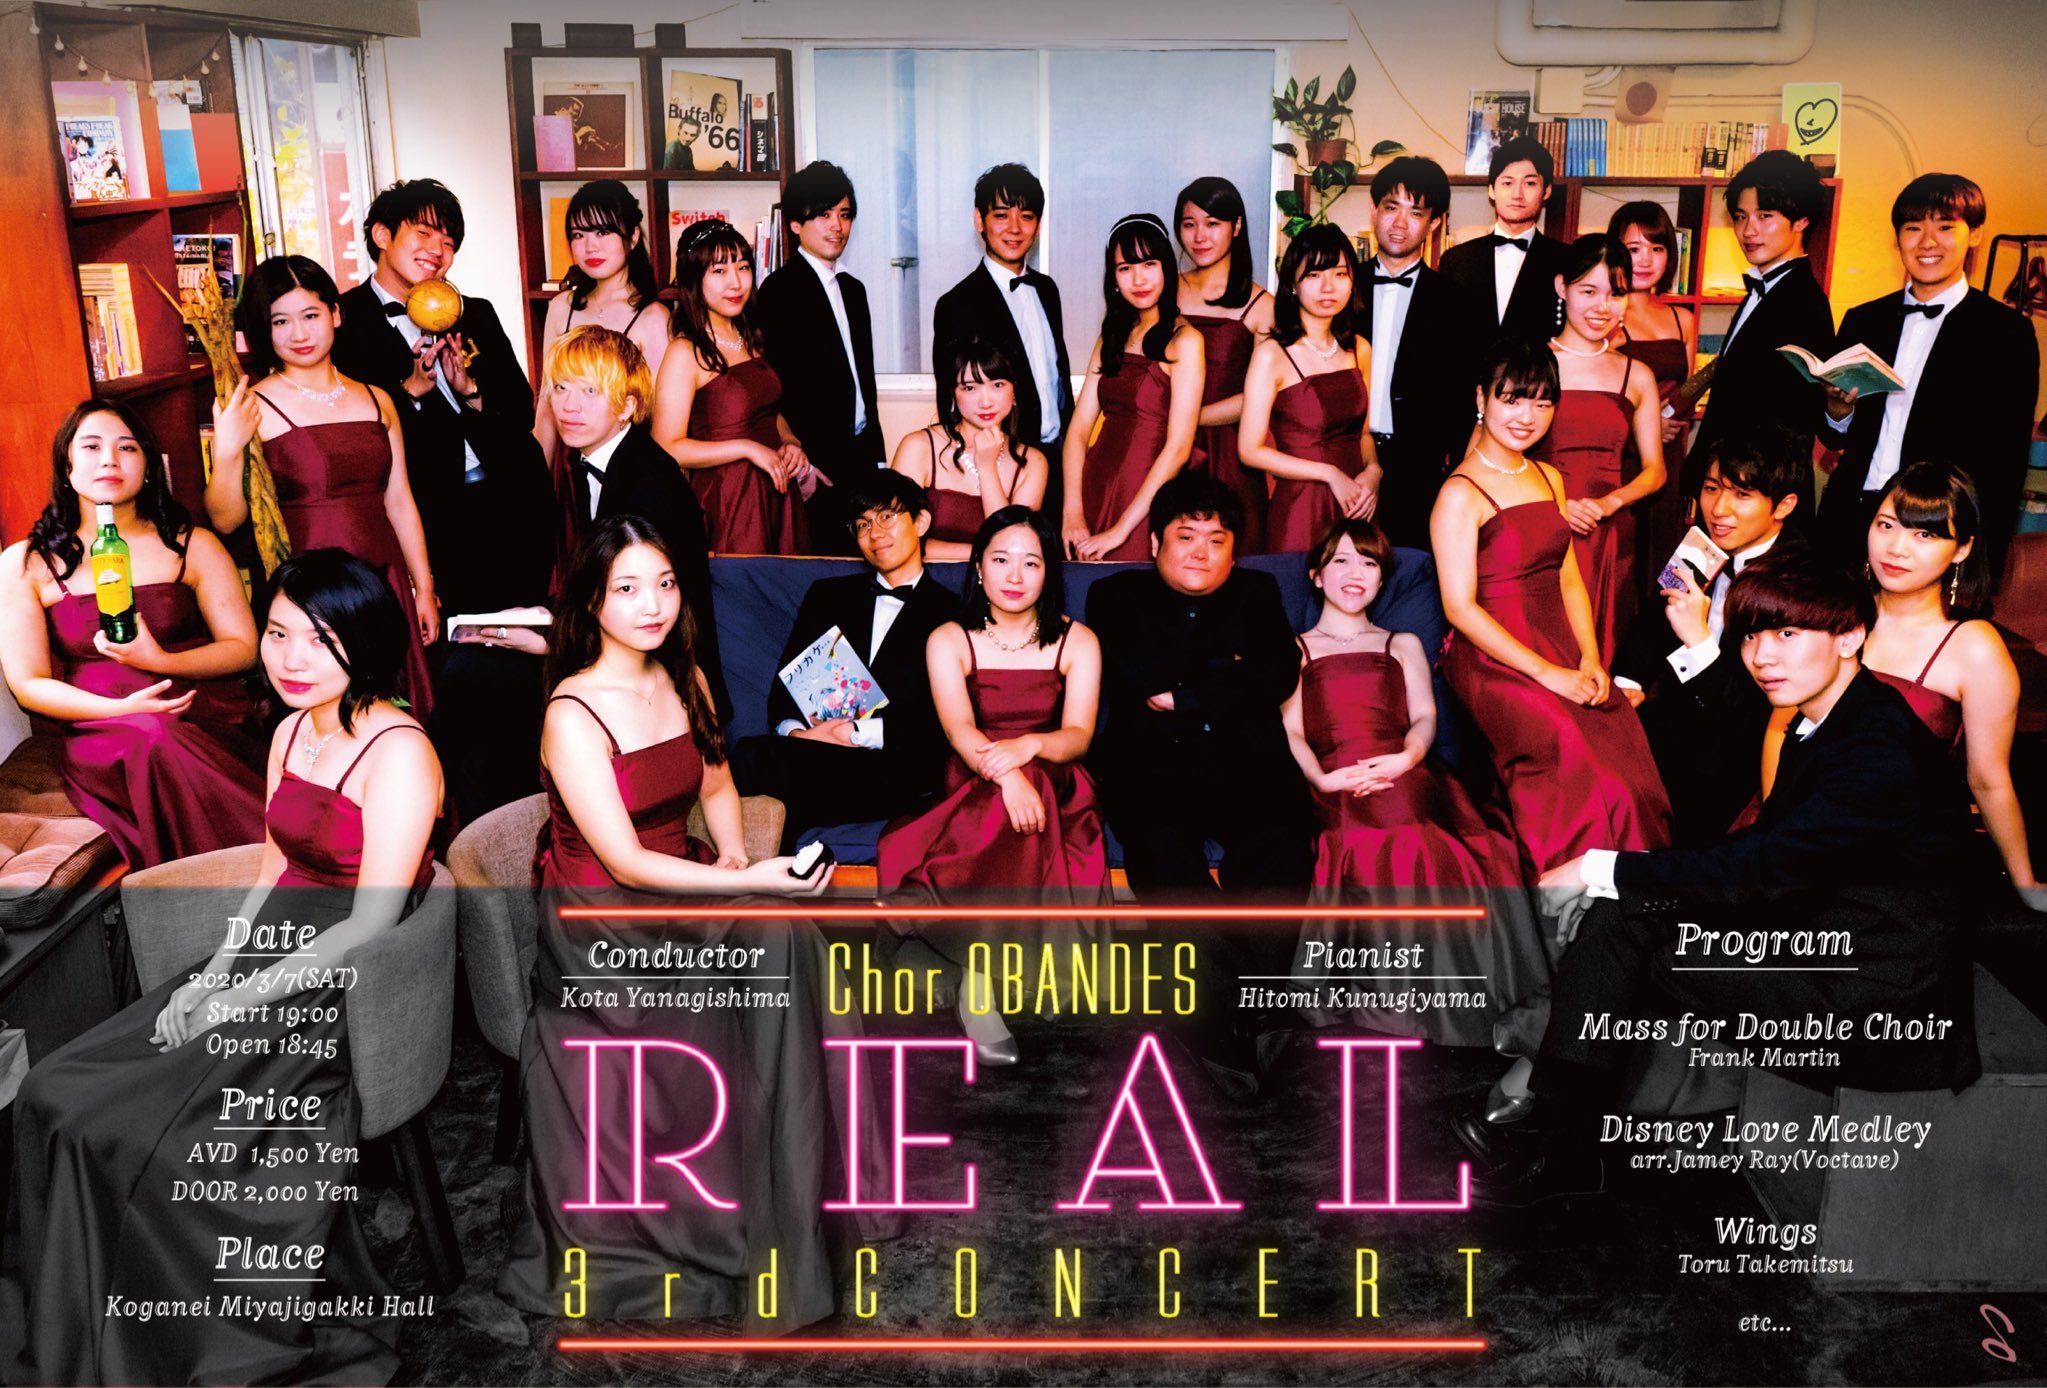 ”Chor OBANDES 3rd concert “REAL”